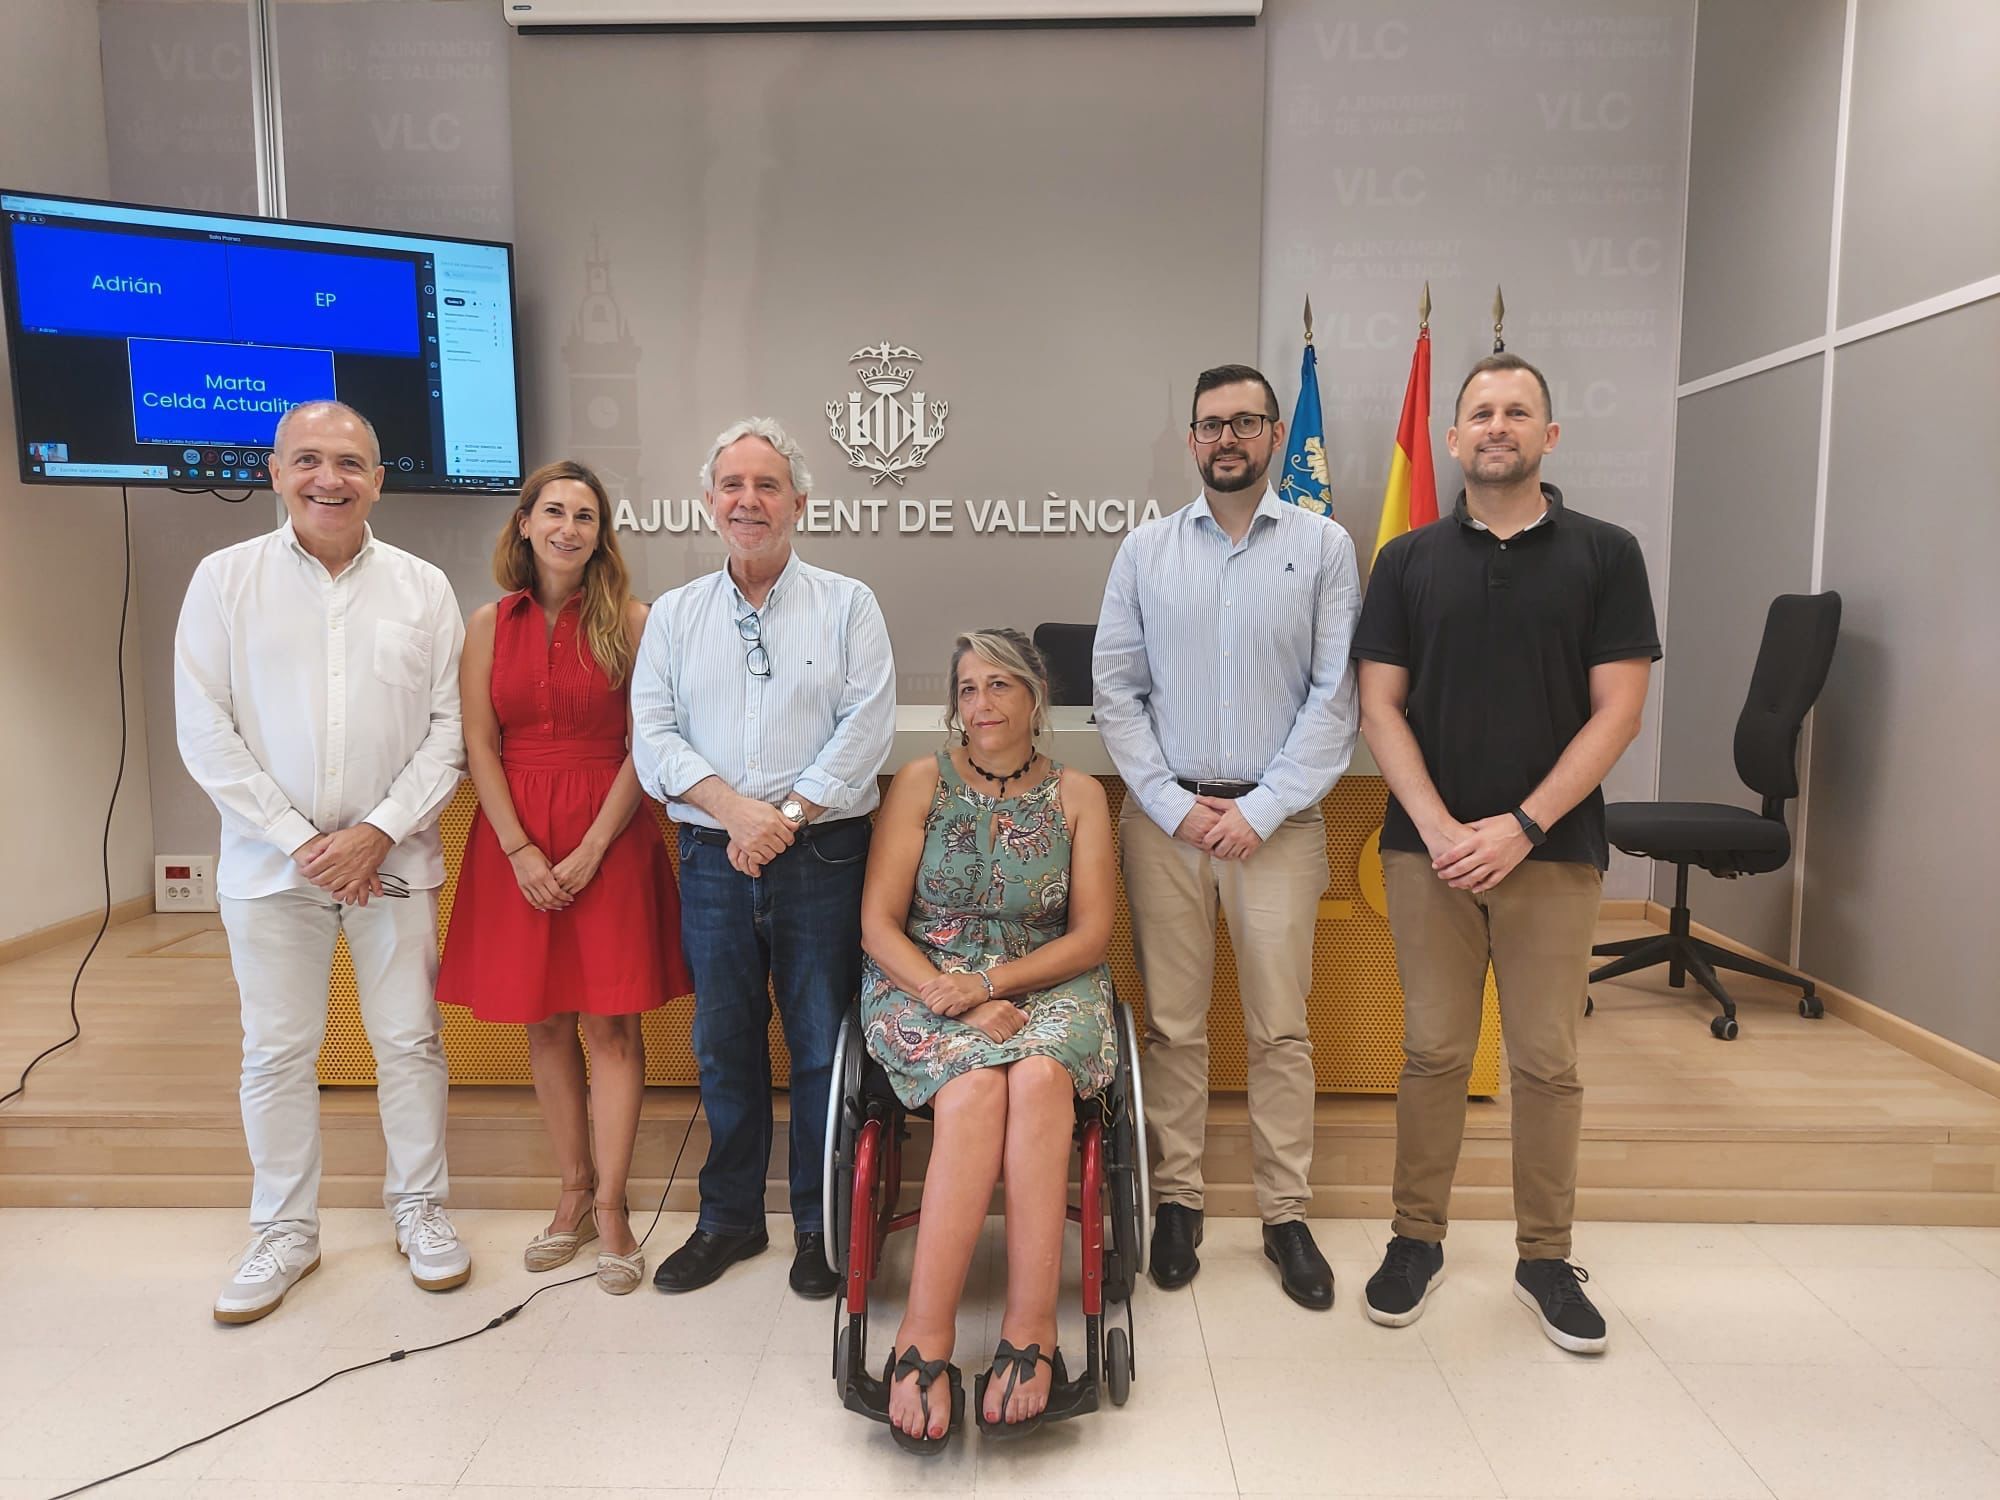 PREDIF y Visit Valencia lanzan una guía para organizar congresos accesibles